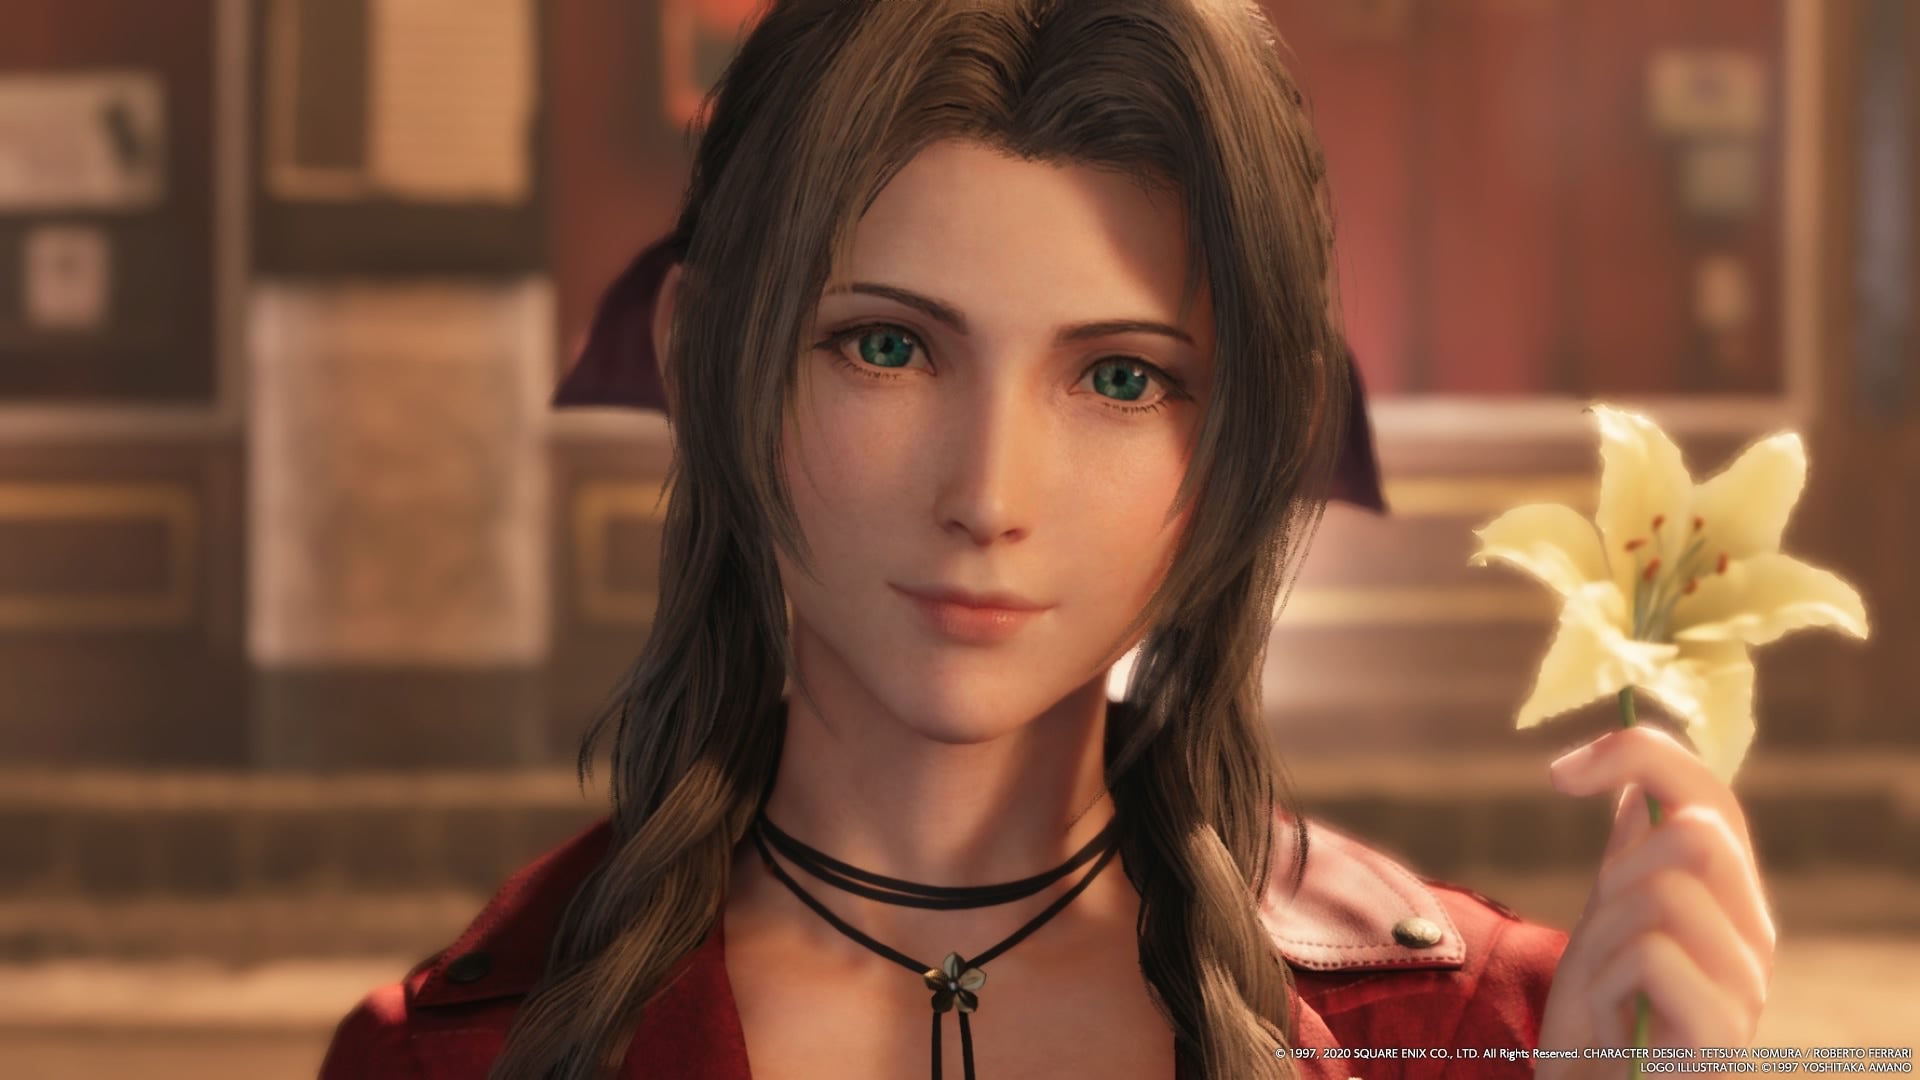 Obrazki dla Final Fantasy 7 Remake trafi na PC już za tydzień